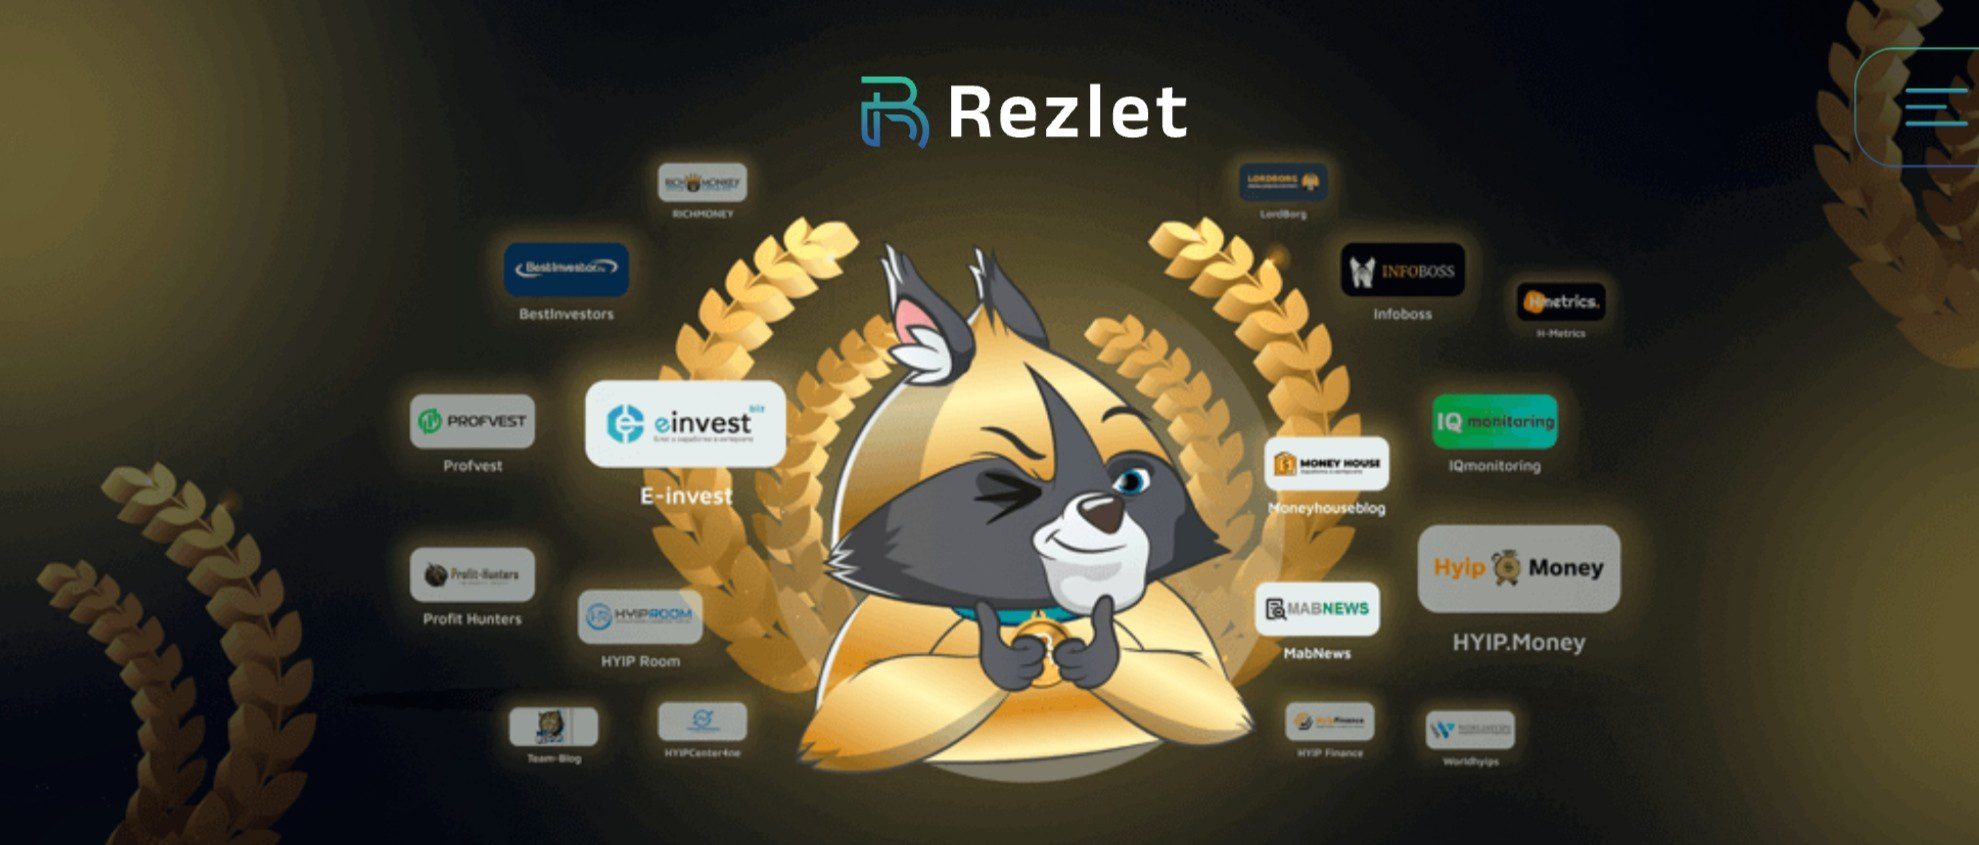 Rezlet инвестиционная компания обзор